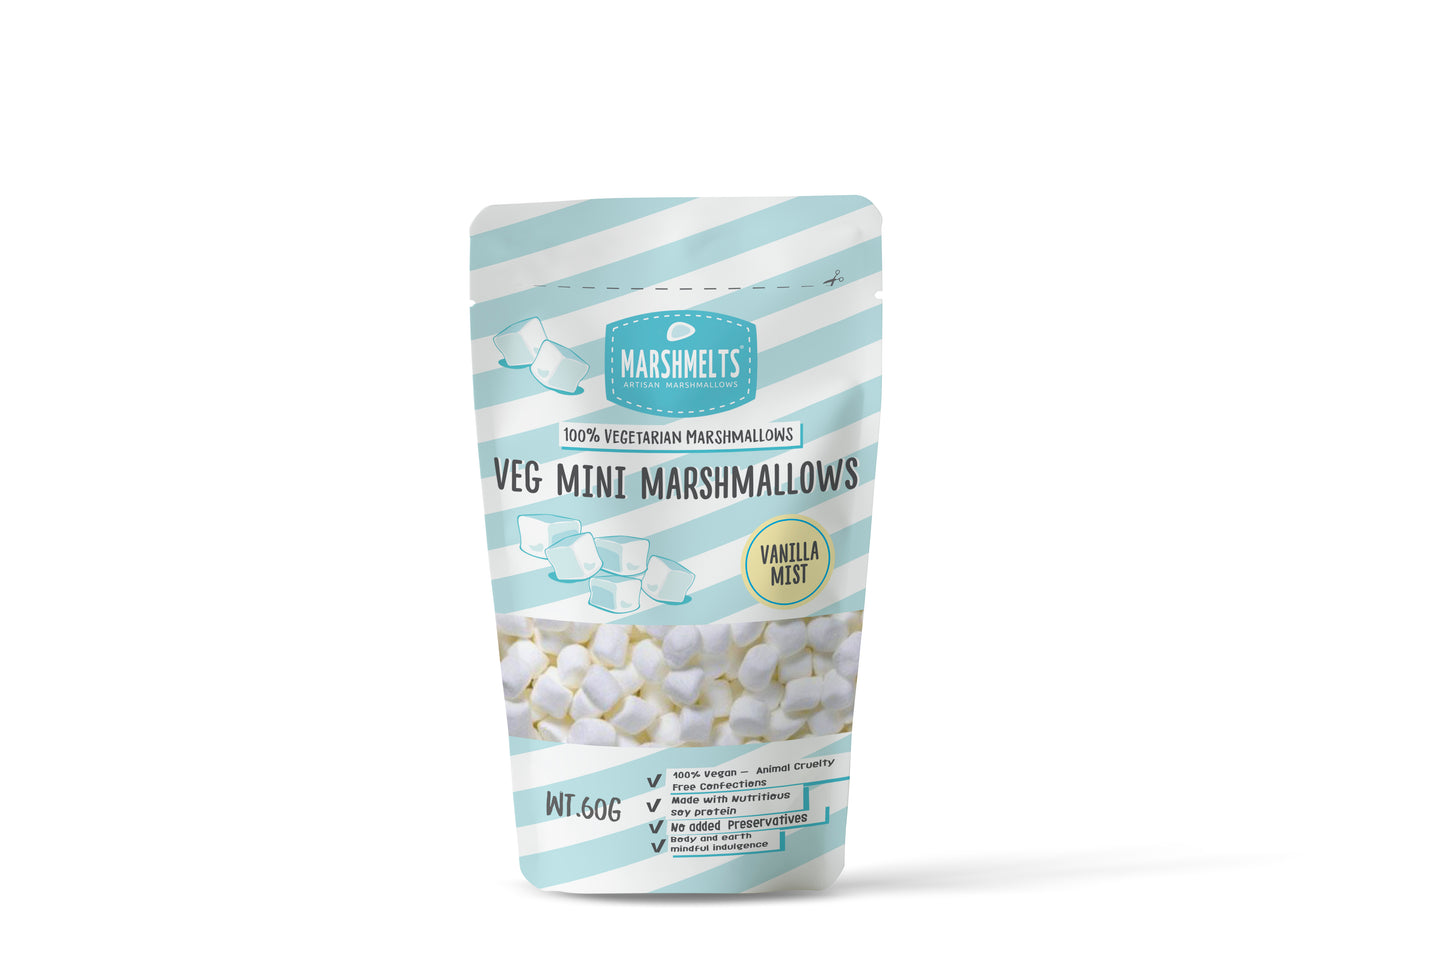 Vanilla Mist | Veg Mini Marshmallow | Marshmelts